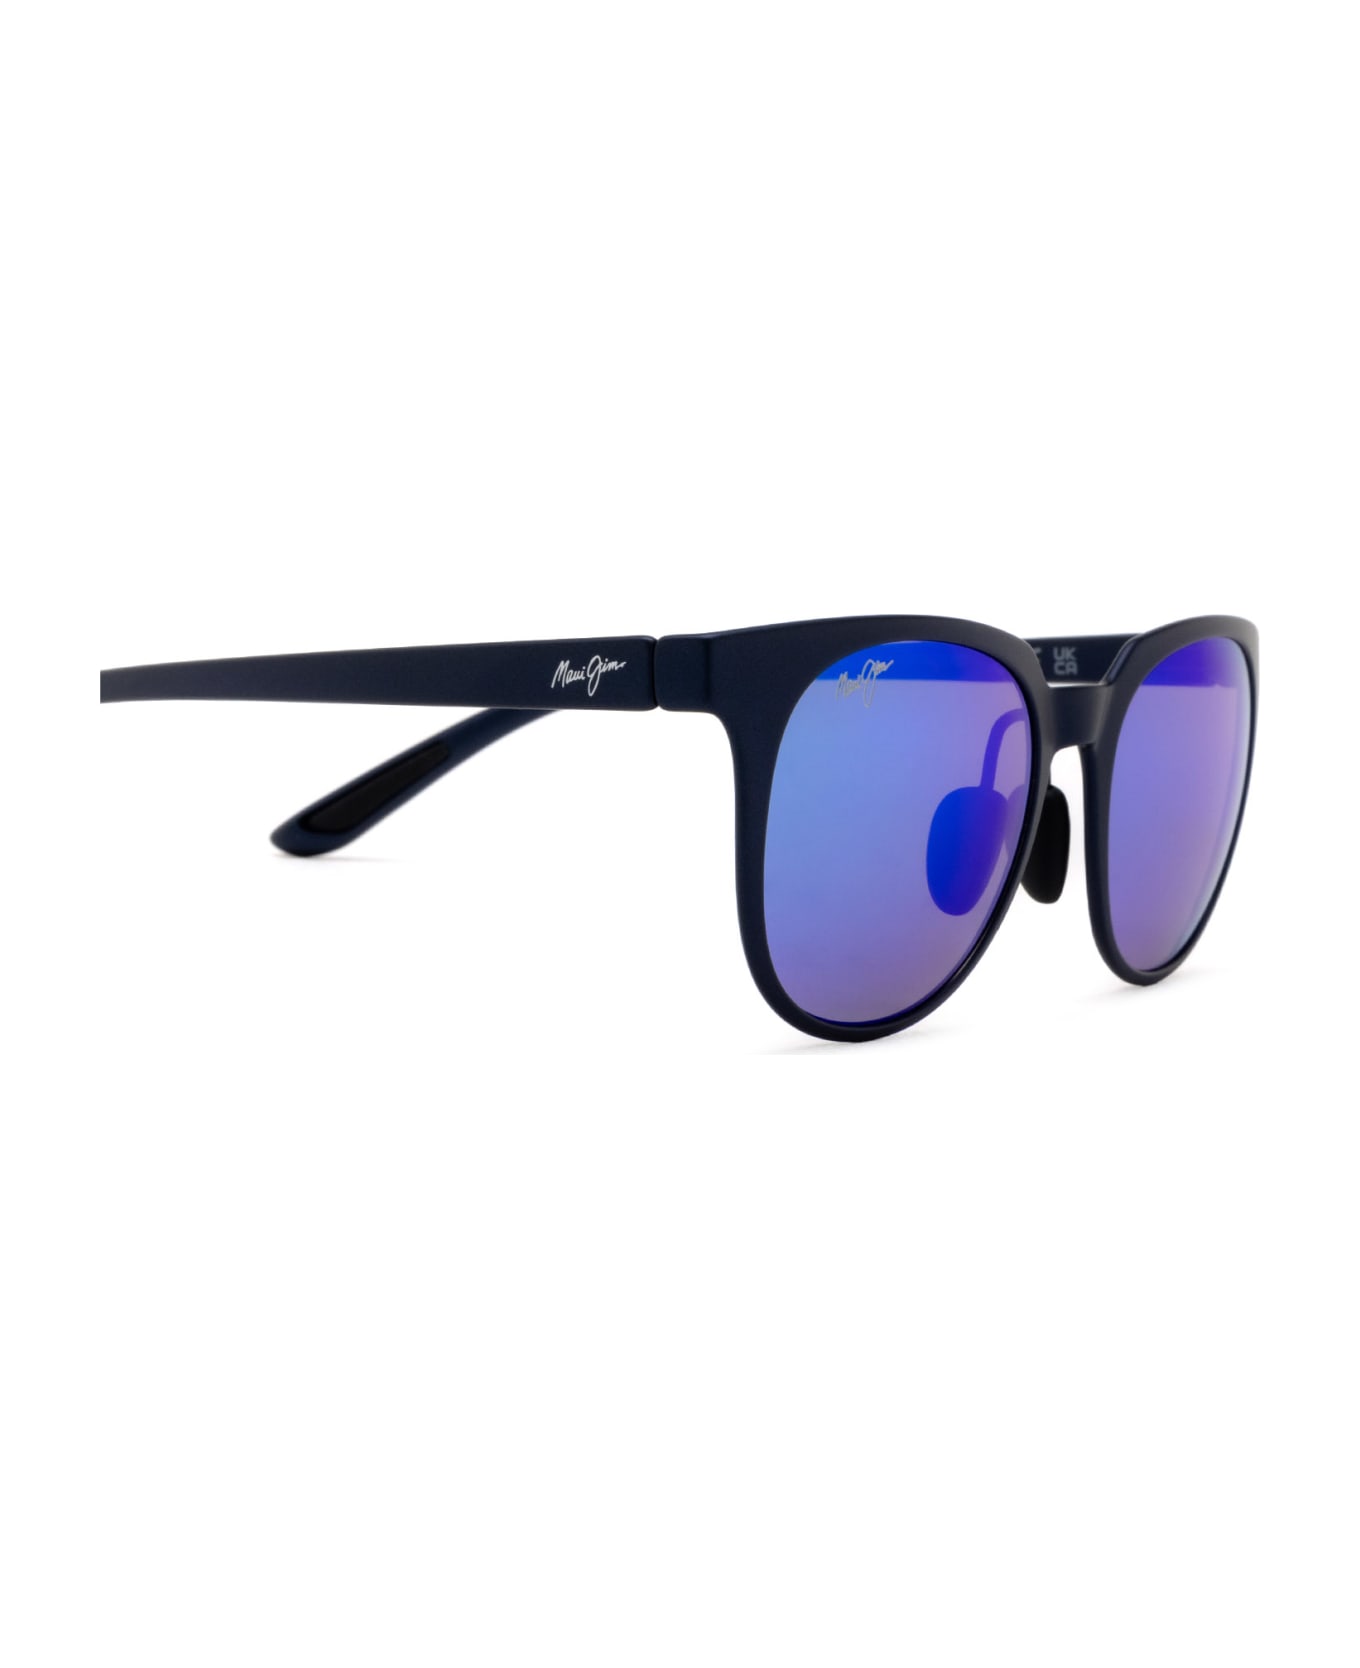 Maui Jim Mj454 Blue Sunglasses - Blue